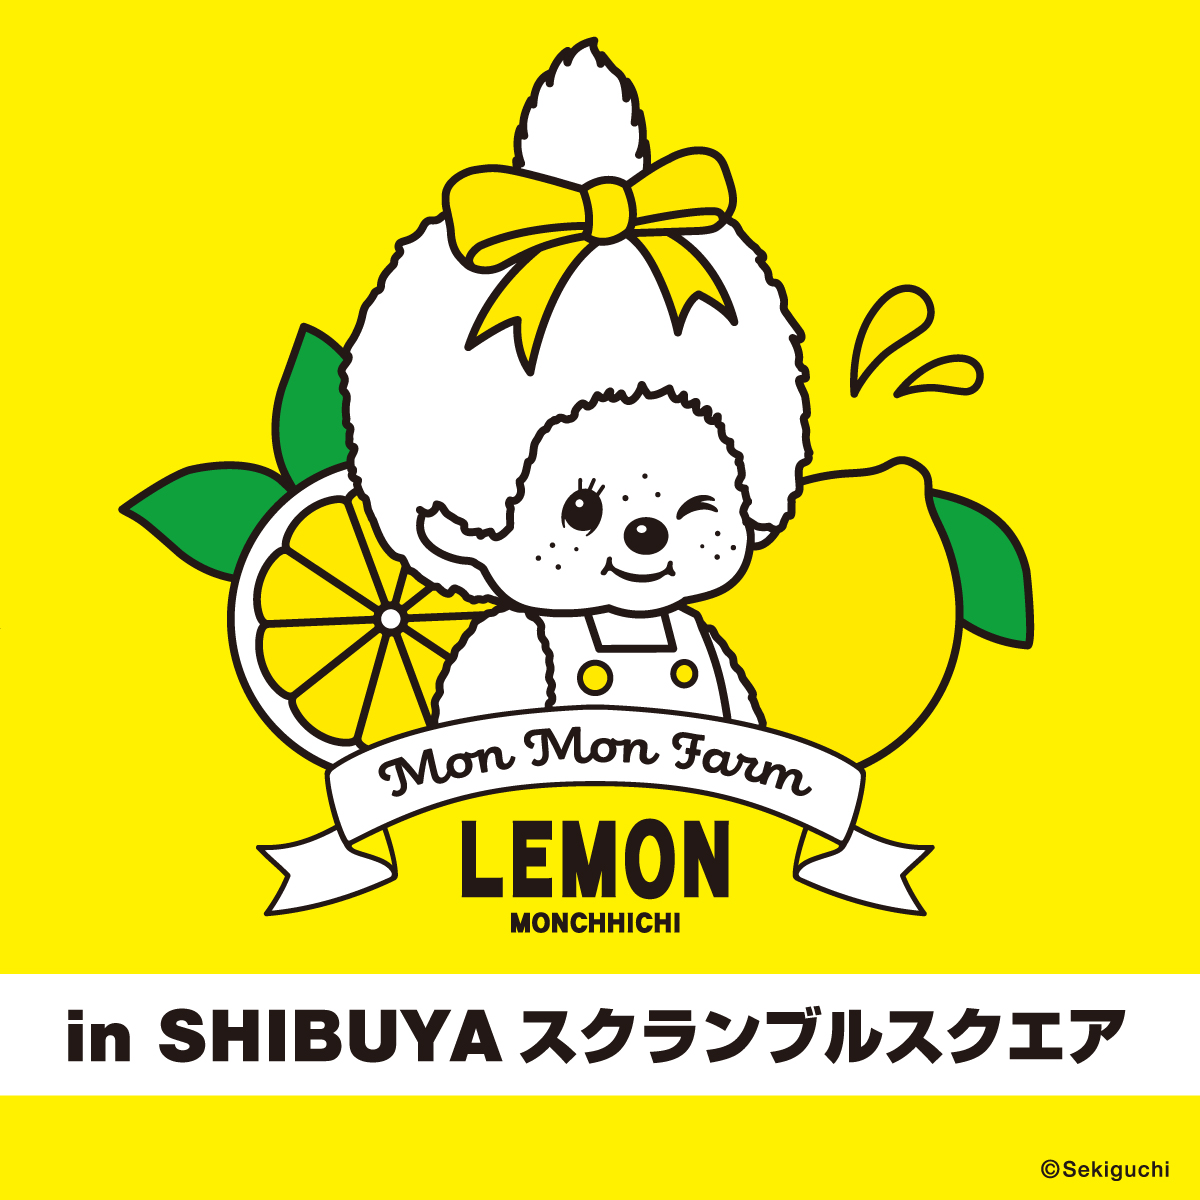 モンチッチ　Mon Mon Farm Lemon Monchhichi in SHIBUYA スクランブルスクエア